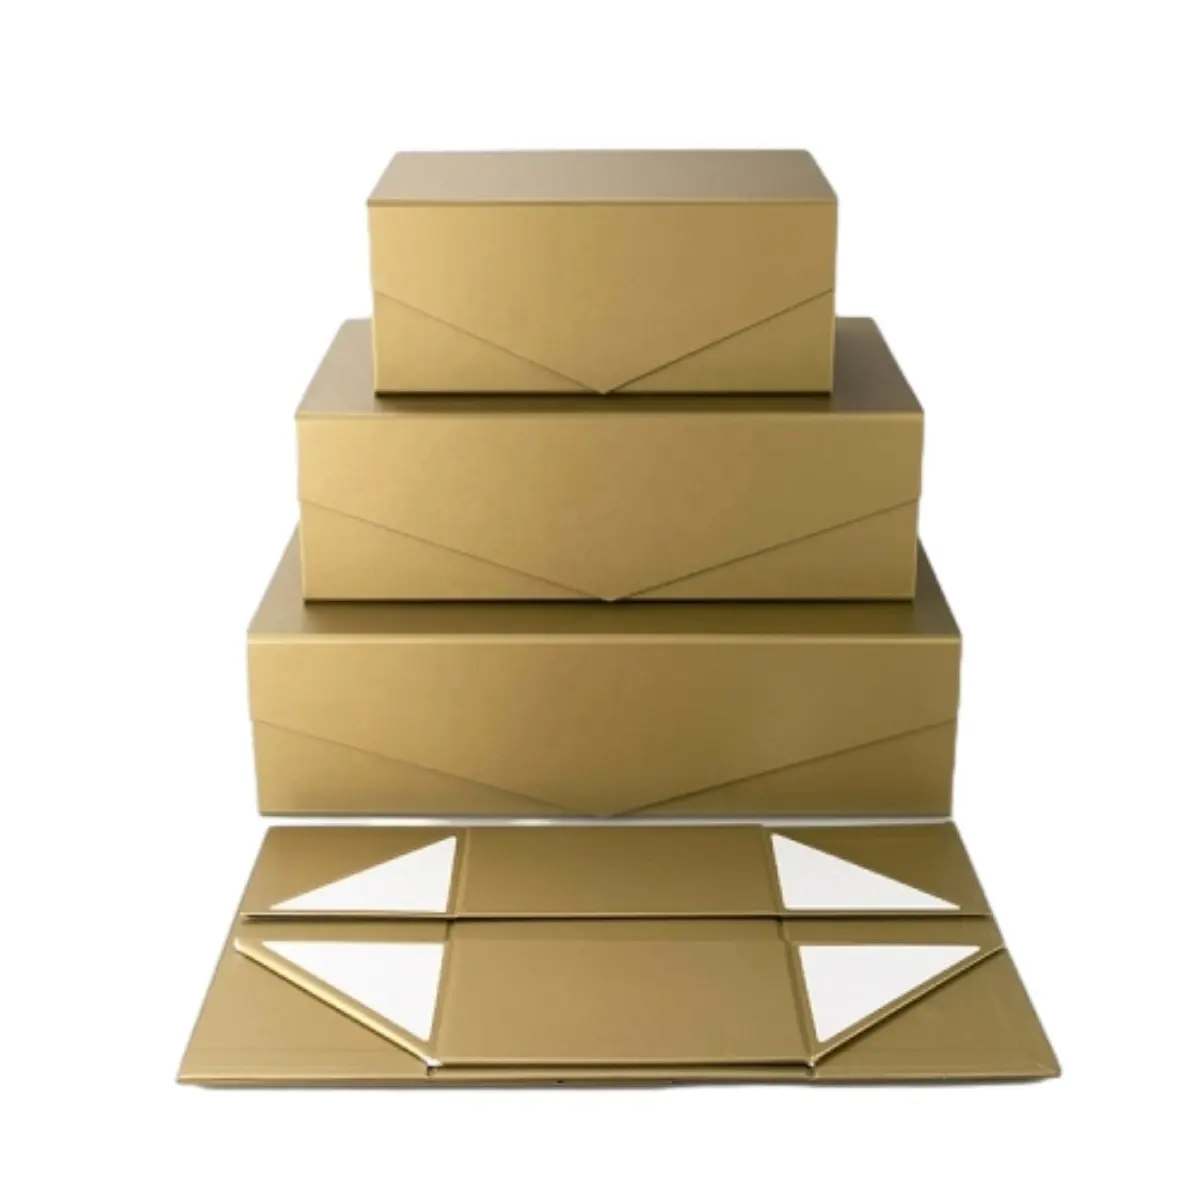 صندوق هدايا ورقي فاخر قابل للطي ومغطى بمغناطيس يمكن تقديمه للأعمال التجارية